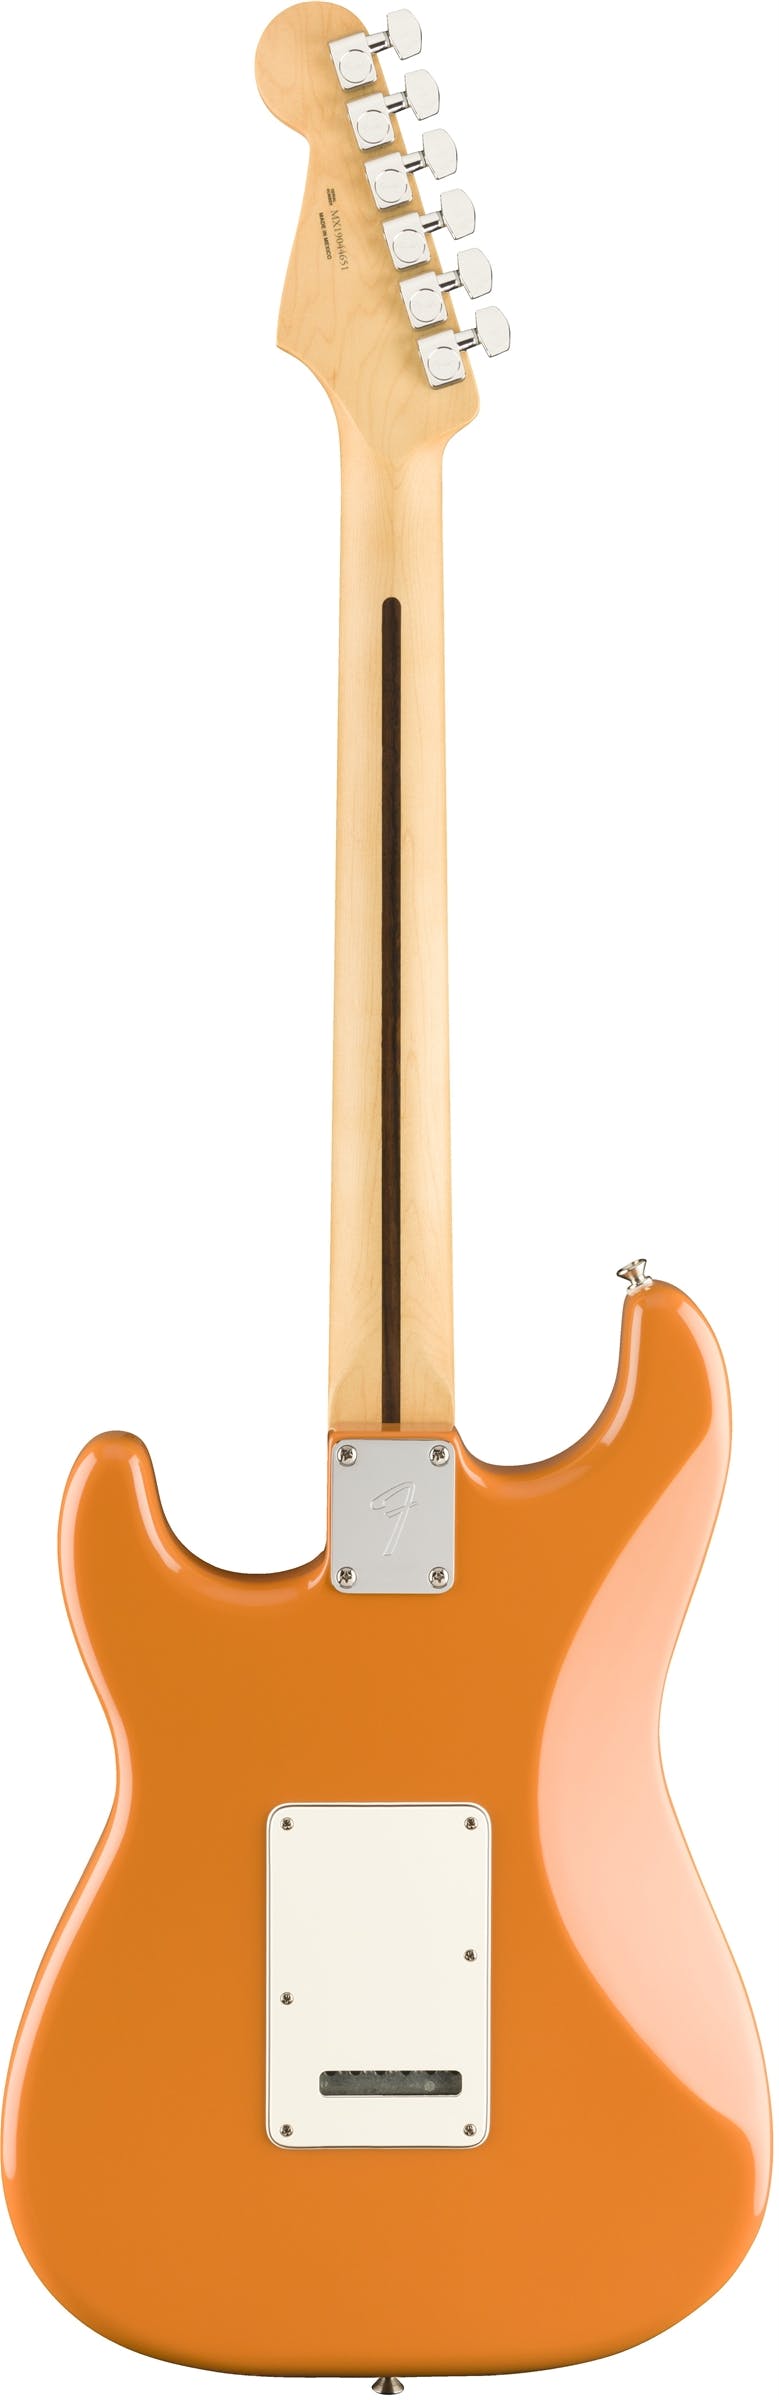 Fender Player Stratocaster w/ Maple Fretboard in Capri Orange